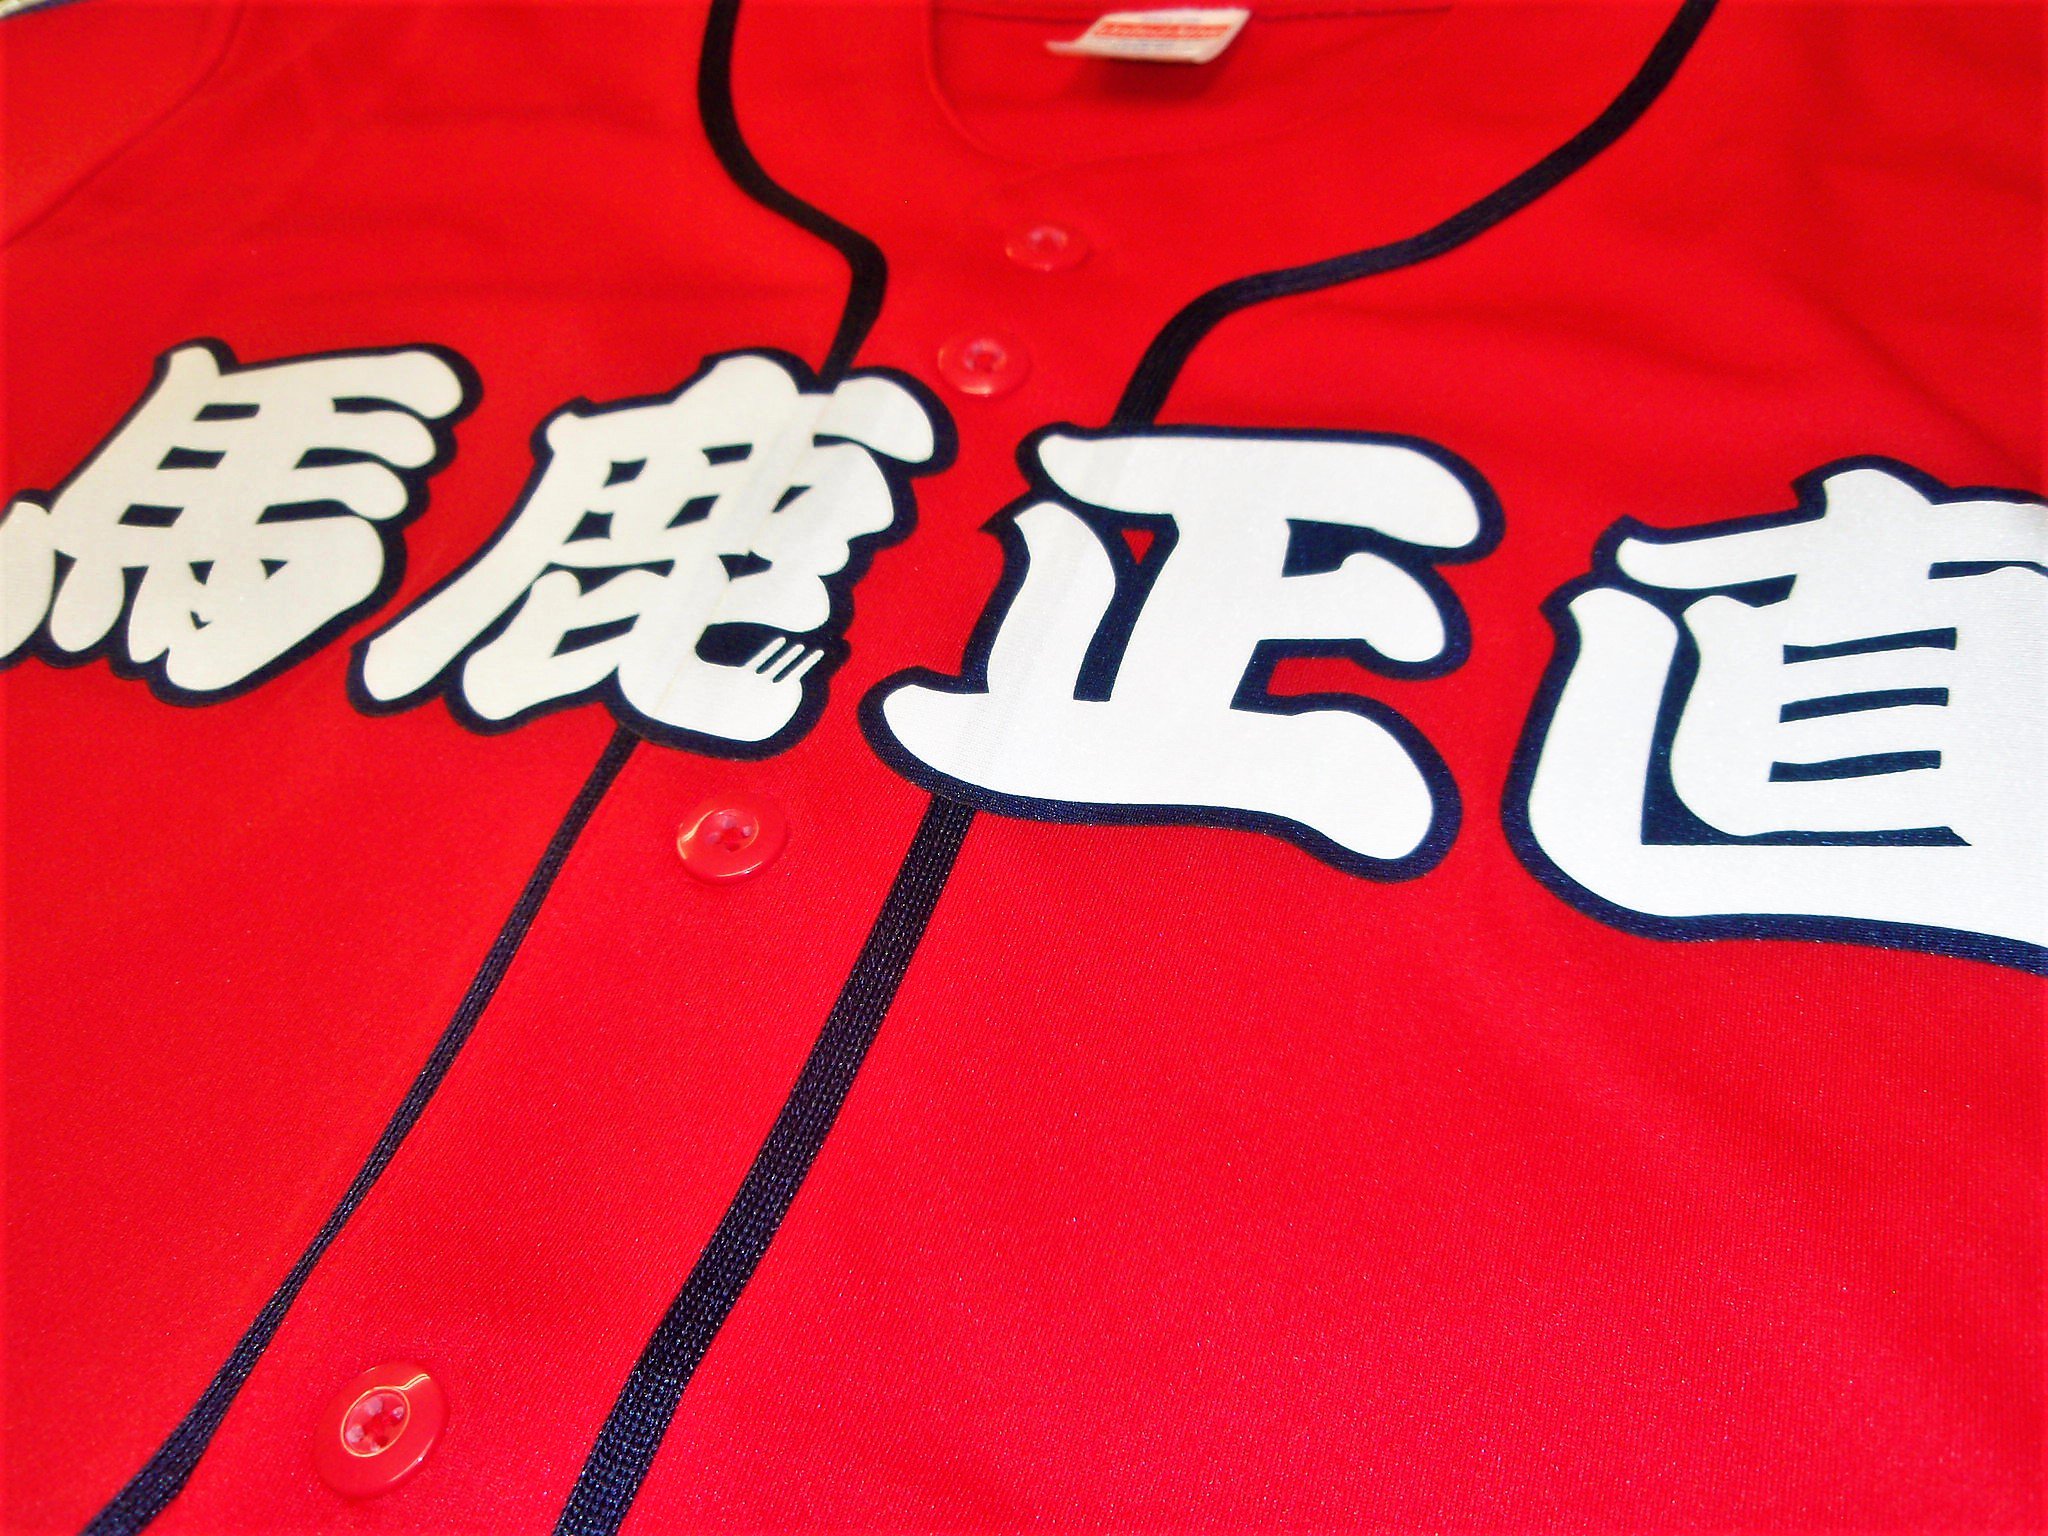 スポーツｎ ｂ ｕ ドライベースボールシャツに2重圧着でチーム名を施しました 赤白紺のコントラストが際立ちますね T Co tgr7pyis 野球ユニフォーム 野球ユニフォームオーダー ベースボールシャツ ダンス衣装 イベントユニフォーム